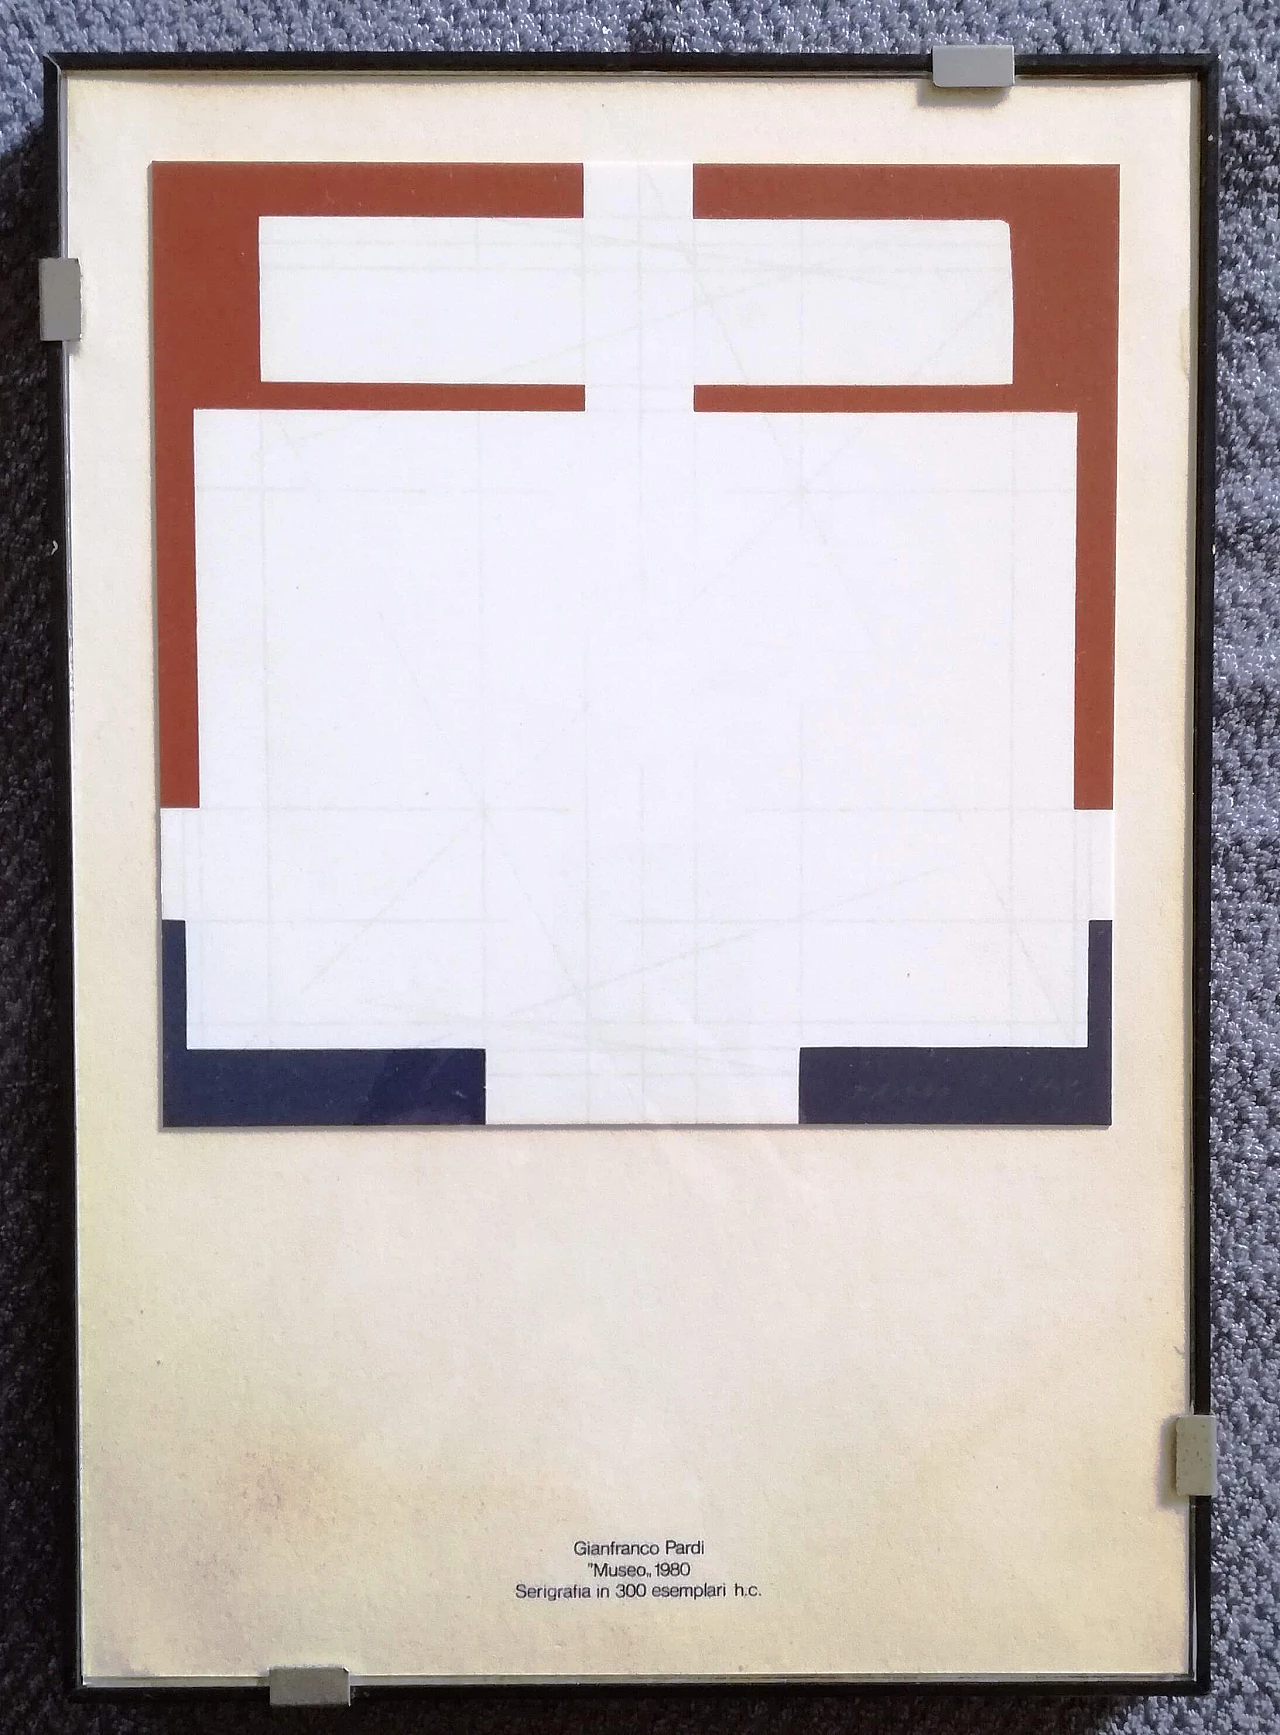 Gianfranco Pardi, Museum, screen print, 1980 1